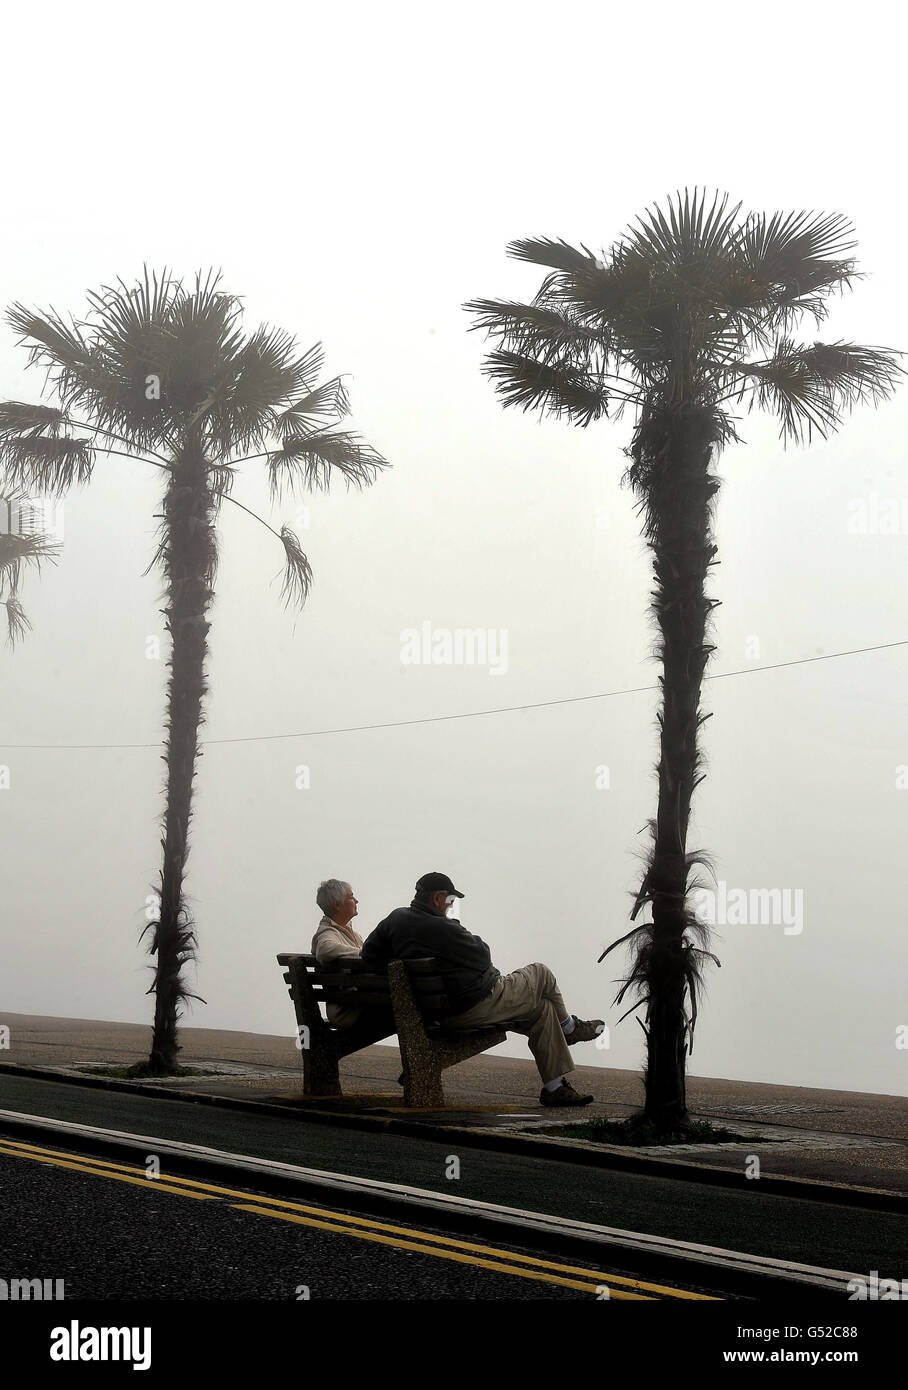 Ein Paar sitzt auf einer Nebelbank am Meer und wartet darauf, dass die vorhergesagte Hitzewelle am Wochenende Southend-on-Sea, Essex, erreicht. Stockfoto